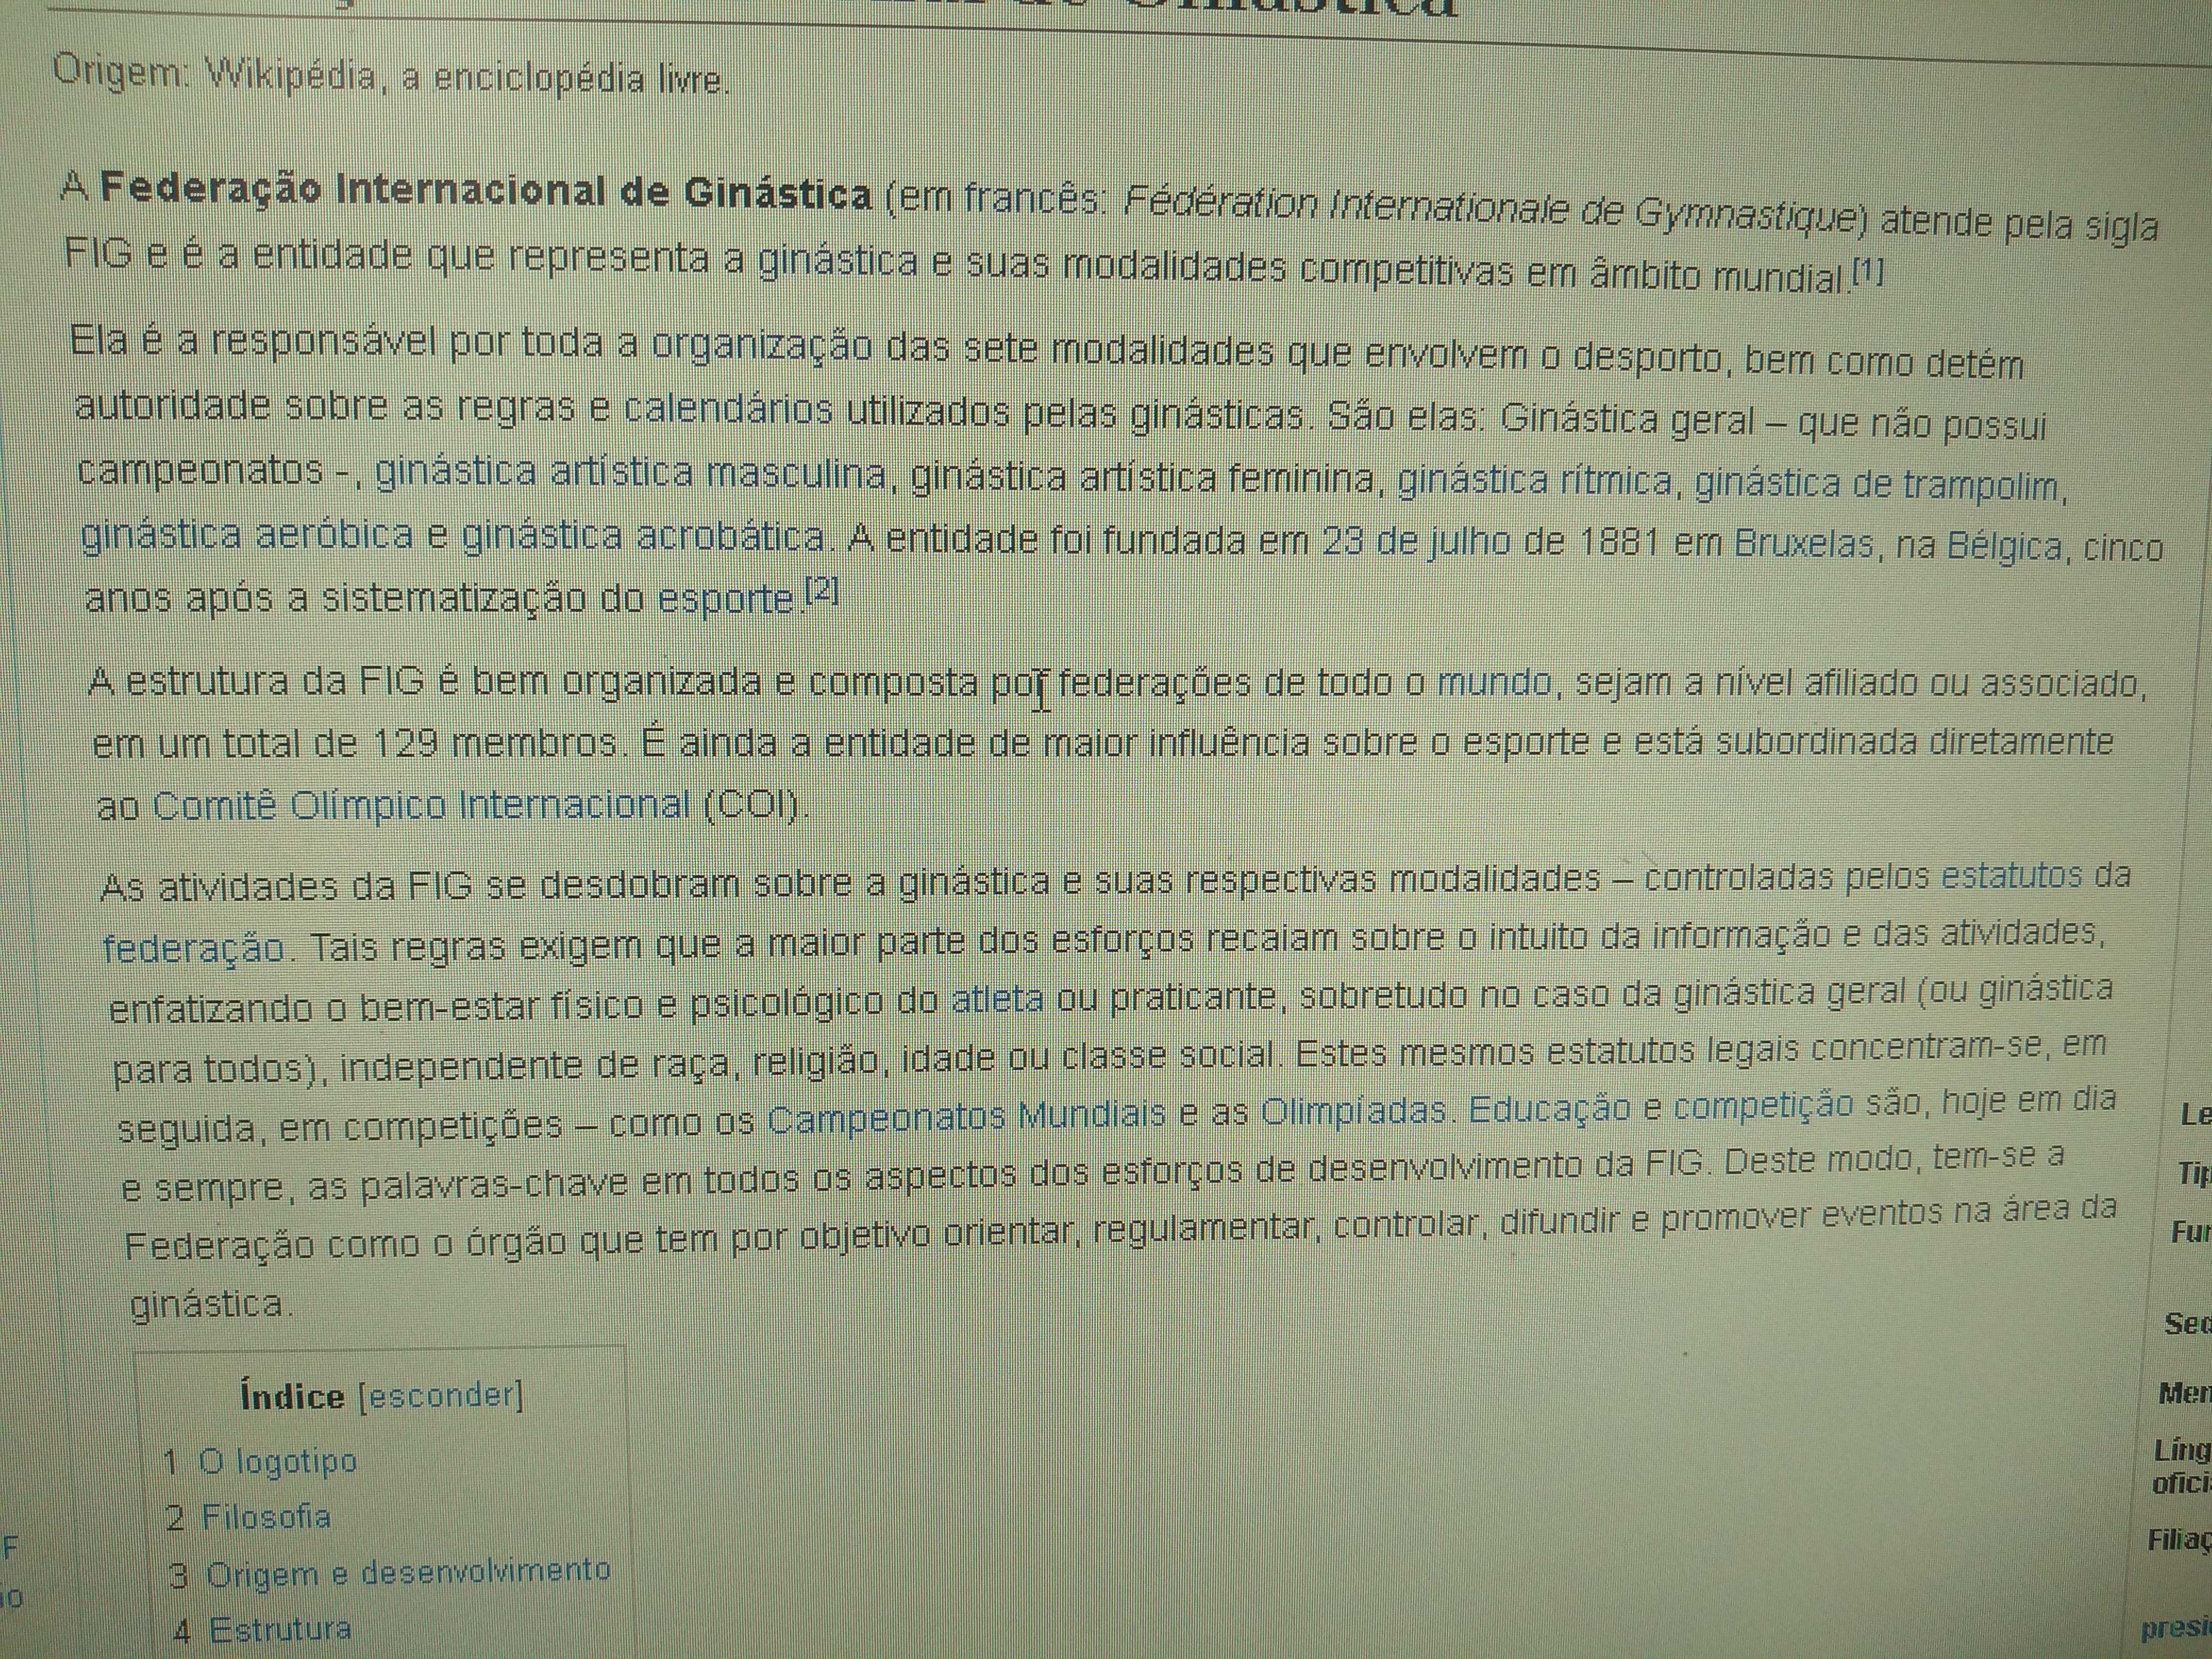 Desporto - Wikipédia, A Enciclopédia Livre PDF, PDF, Esportes